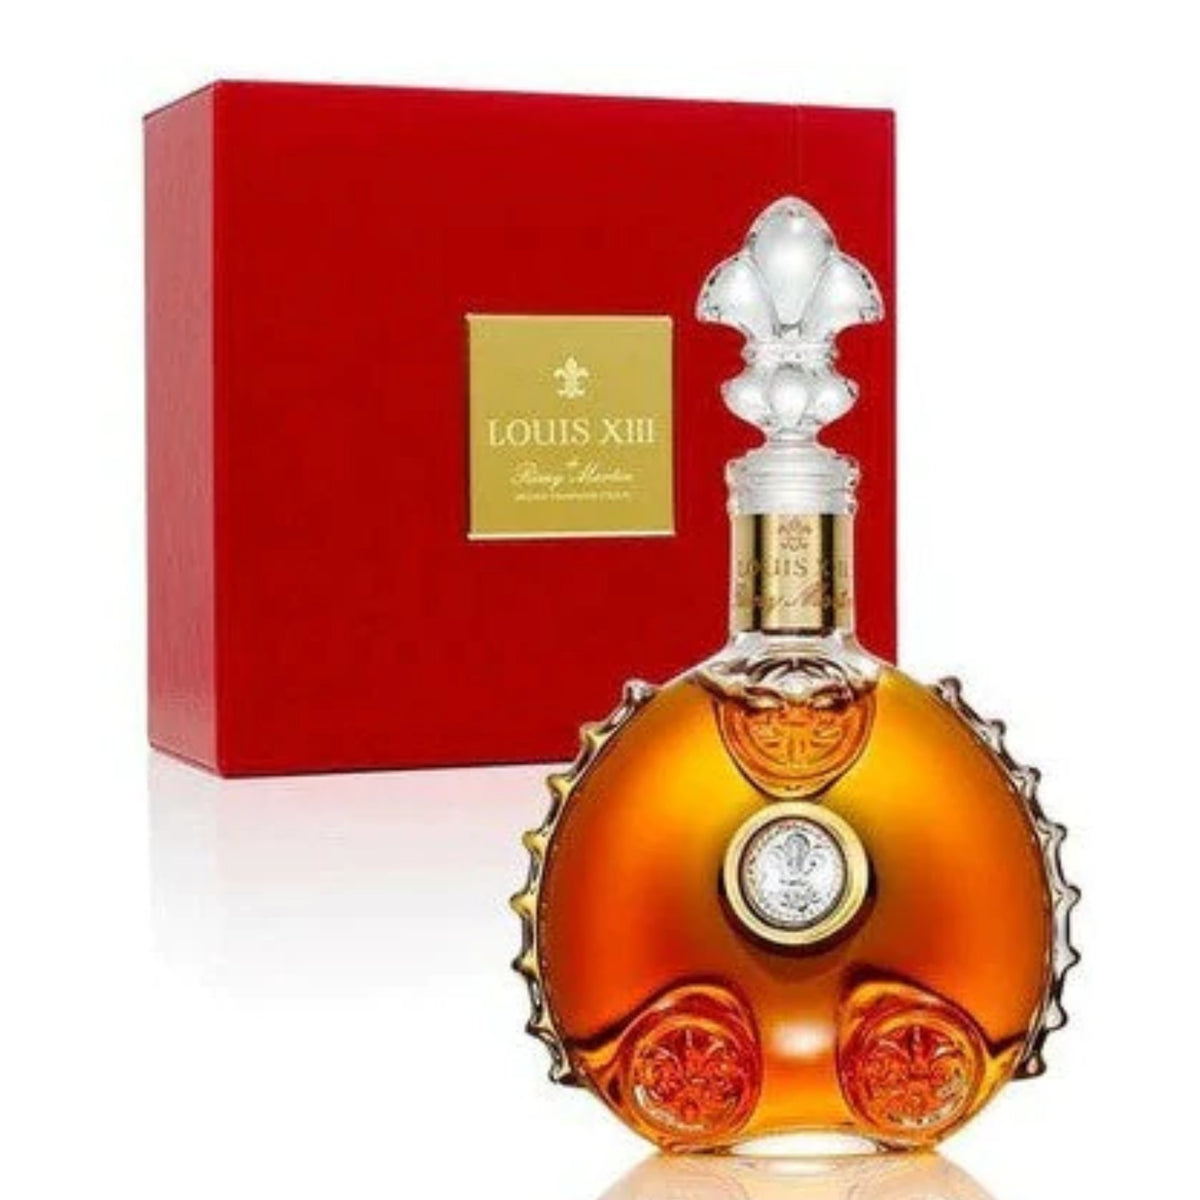 LOUIS XIII Cognac Opens For Online Cognac Sales